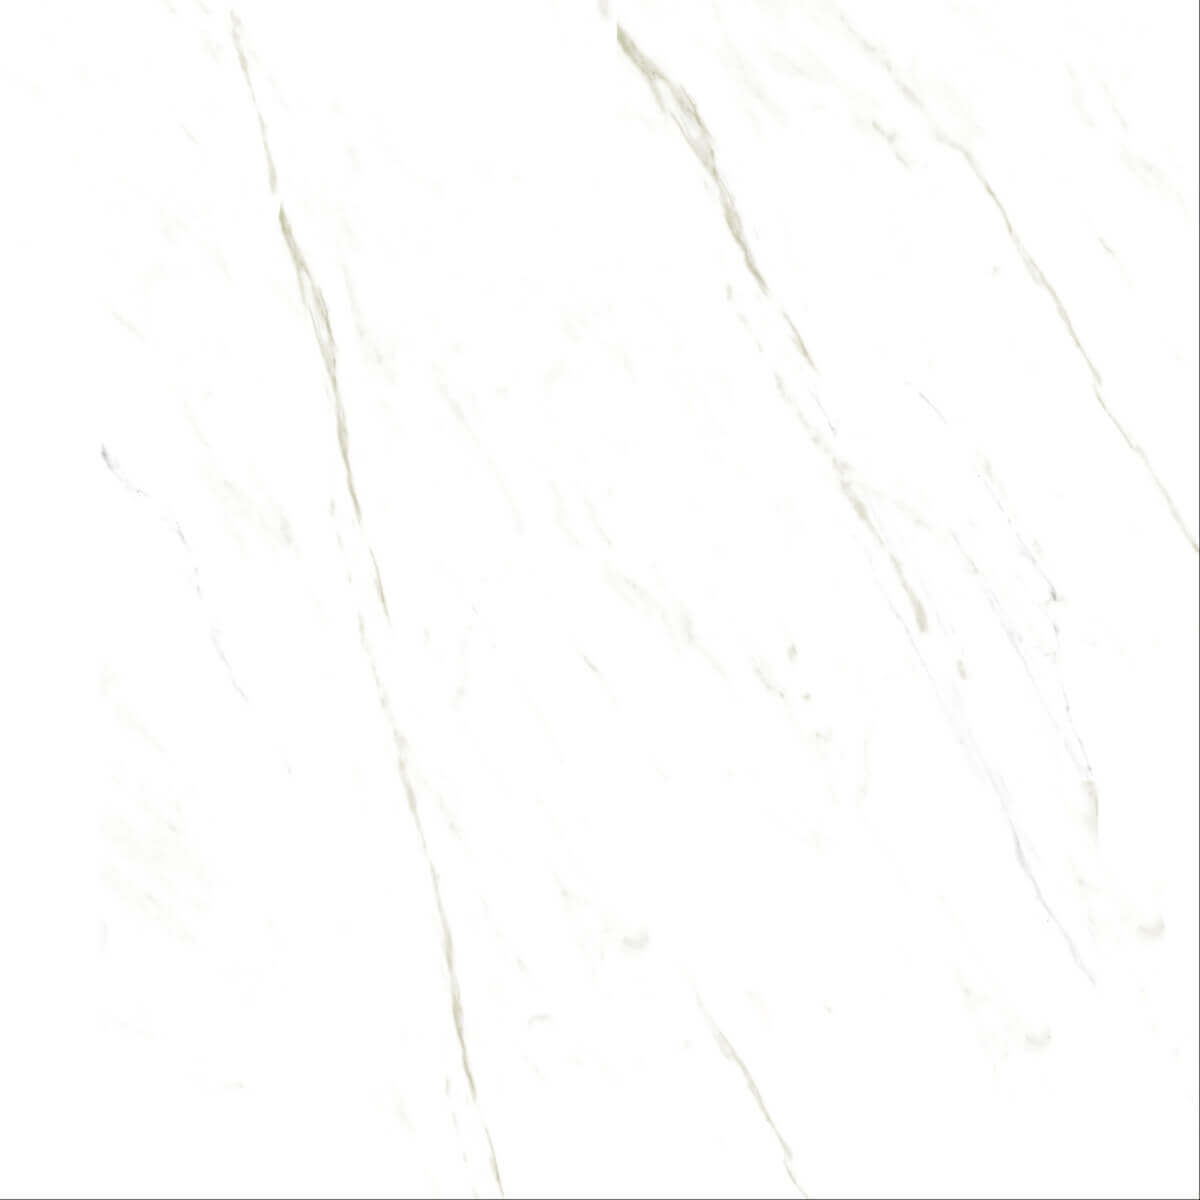 White Marble Tiles for Bathroom Tiles, Living Room Tiles, Kitchen Tiles, Bedroom Tiles, Accent Tiles, Office Tiles, Dining Room Tiles, Bar Tiles, Restaurant Tiles, Hospital Tiles, High Traffic Tiles, Bar/Restaurant, Commercial/Office